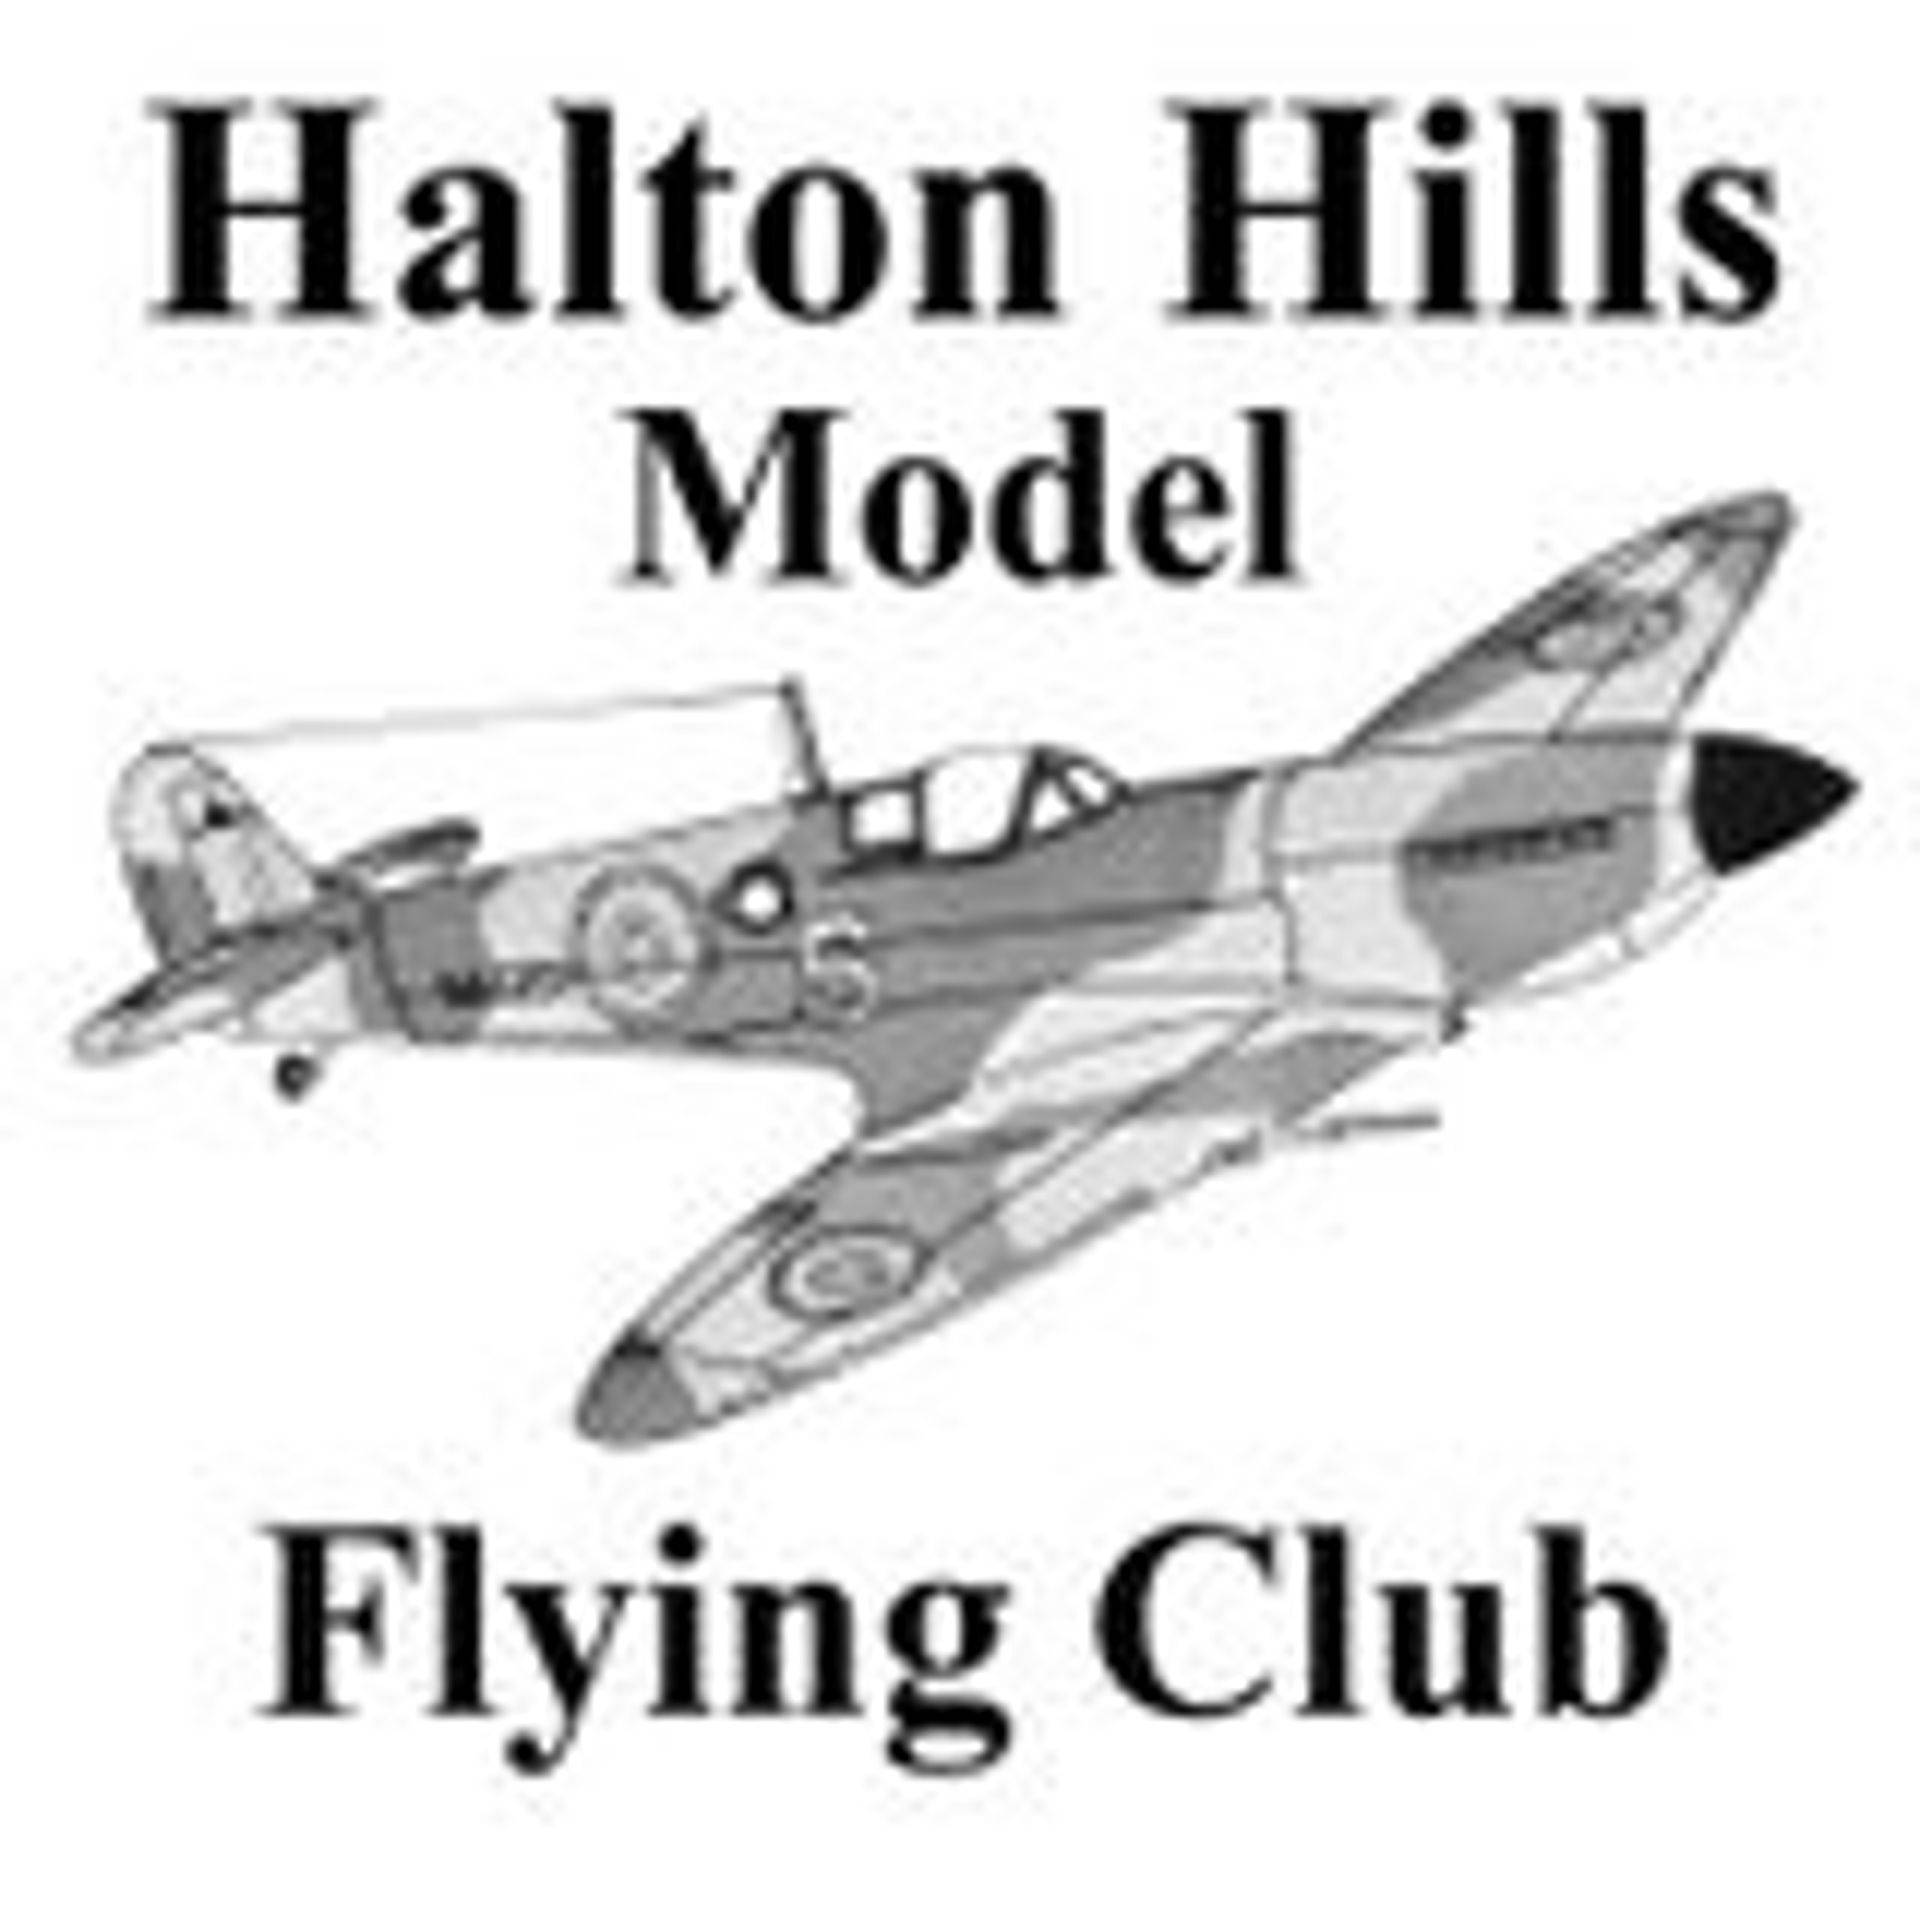 Halton Hills Model Flying Club